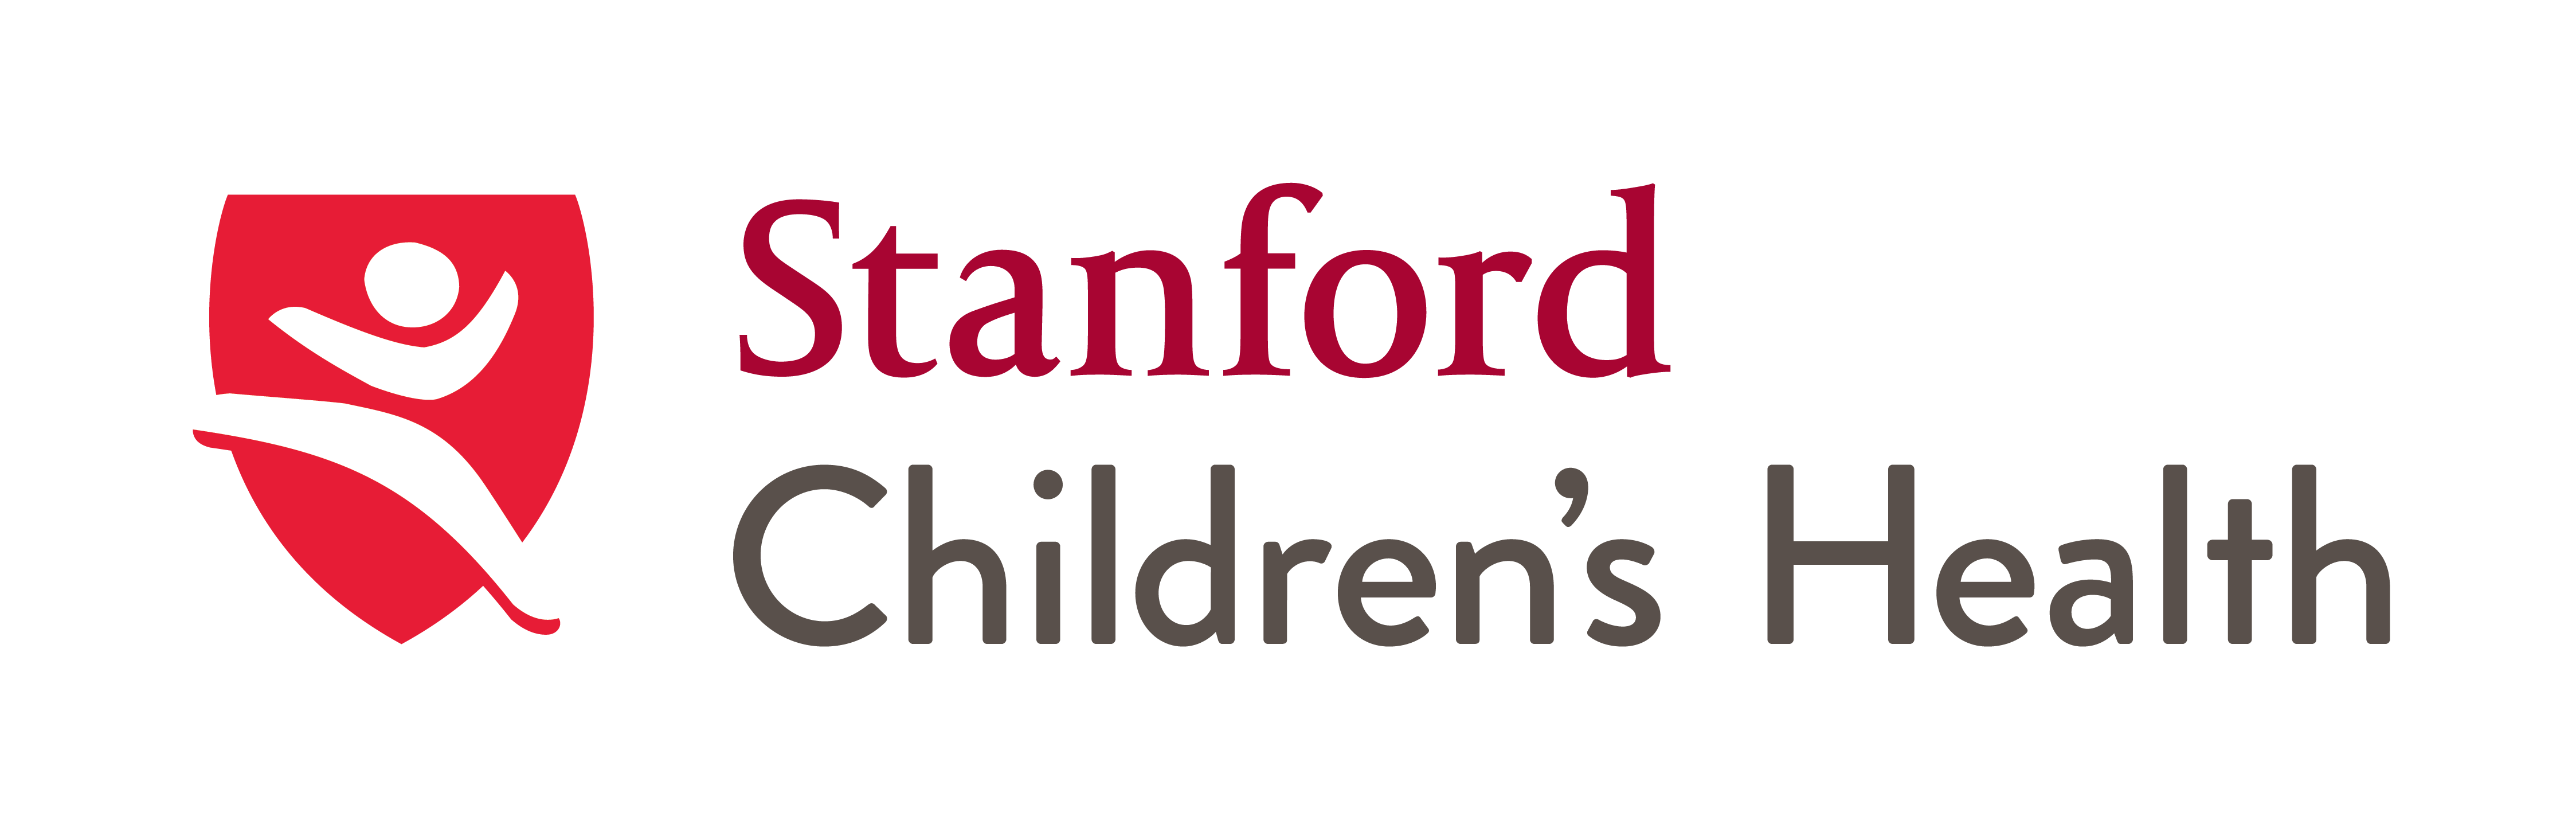 SCH Logo - Brand Standards and Logos - Stanford Children's Health